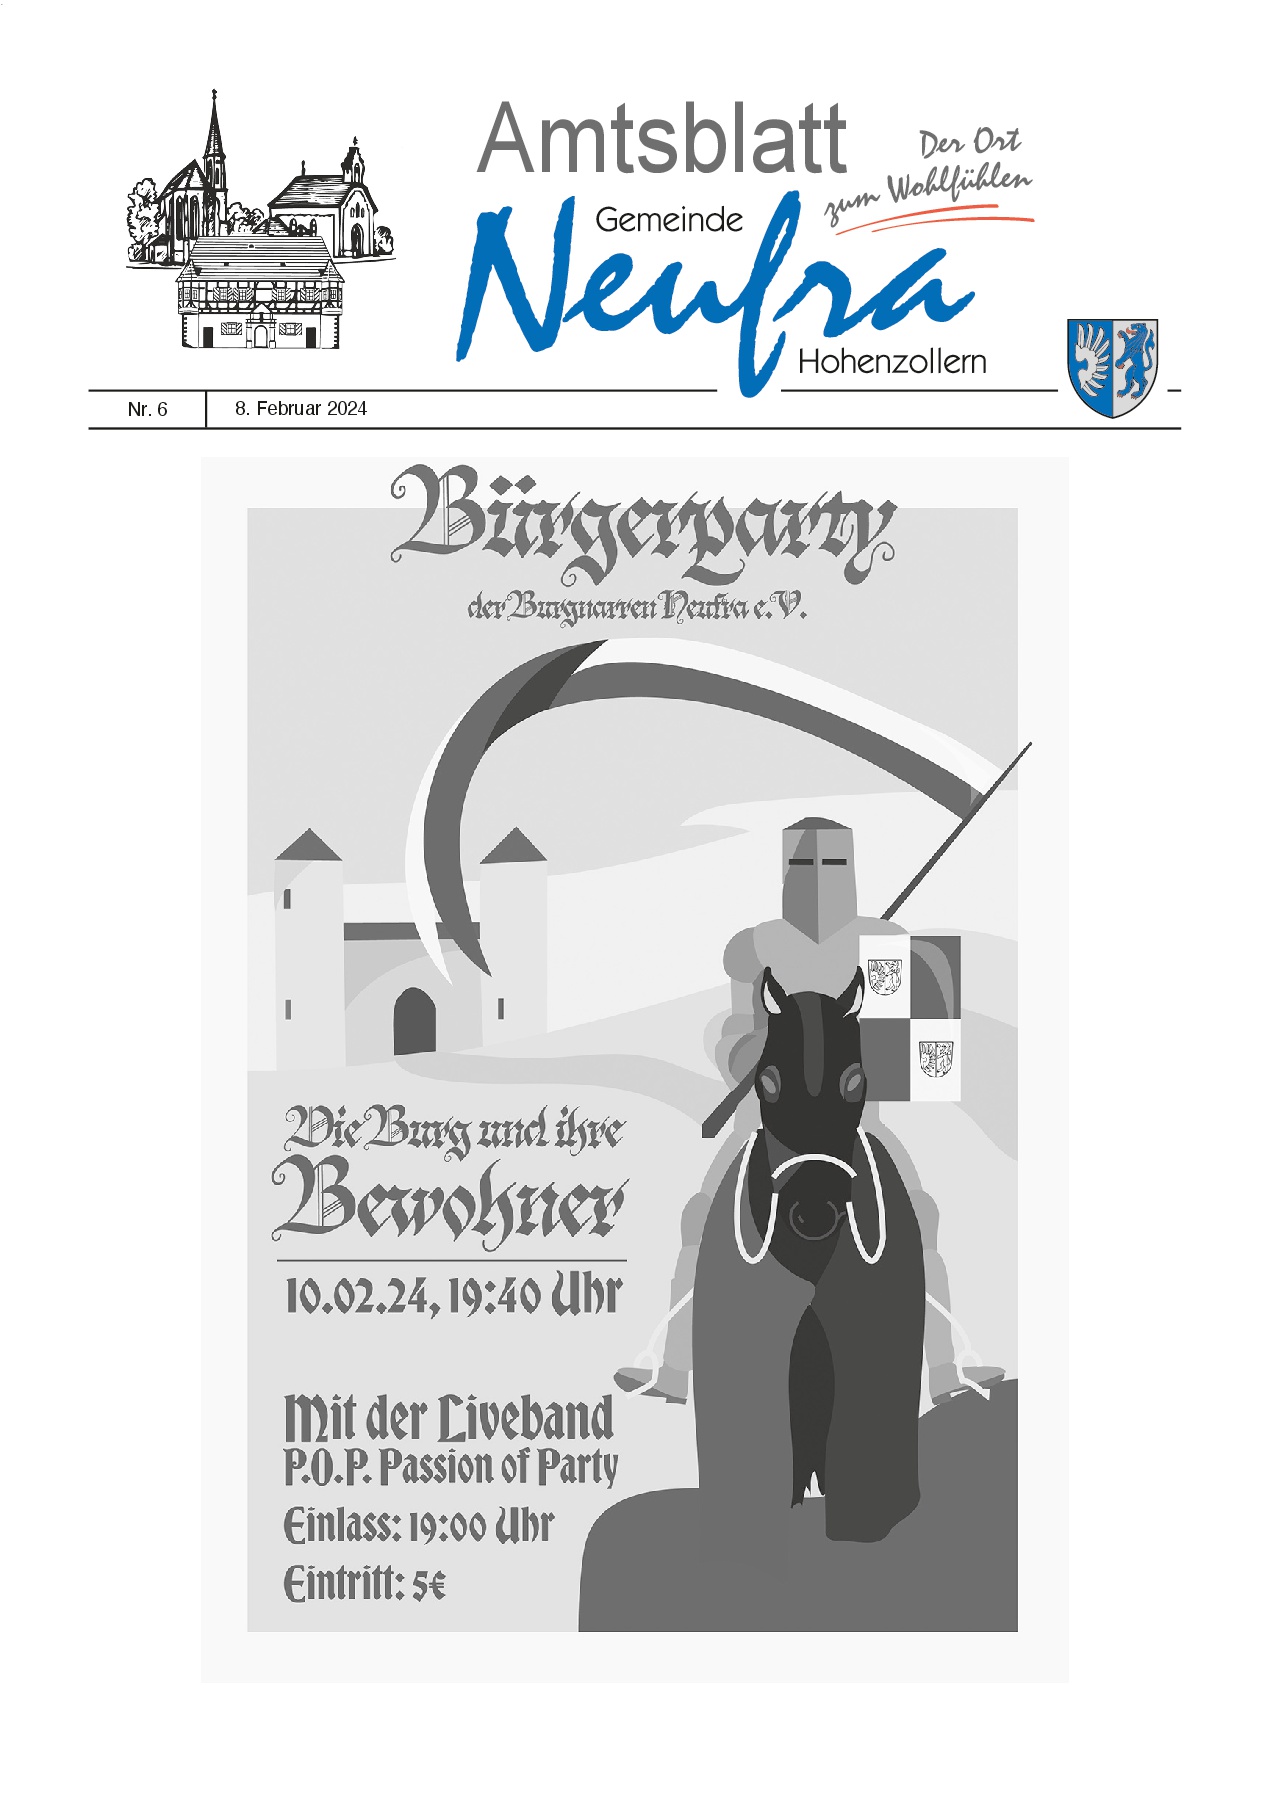  Das Bild zeigt die Titelseite des Amtsblatts Nummer 6 vom 8. Februar 2024 